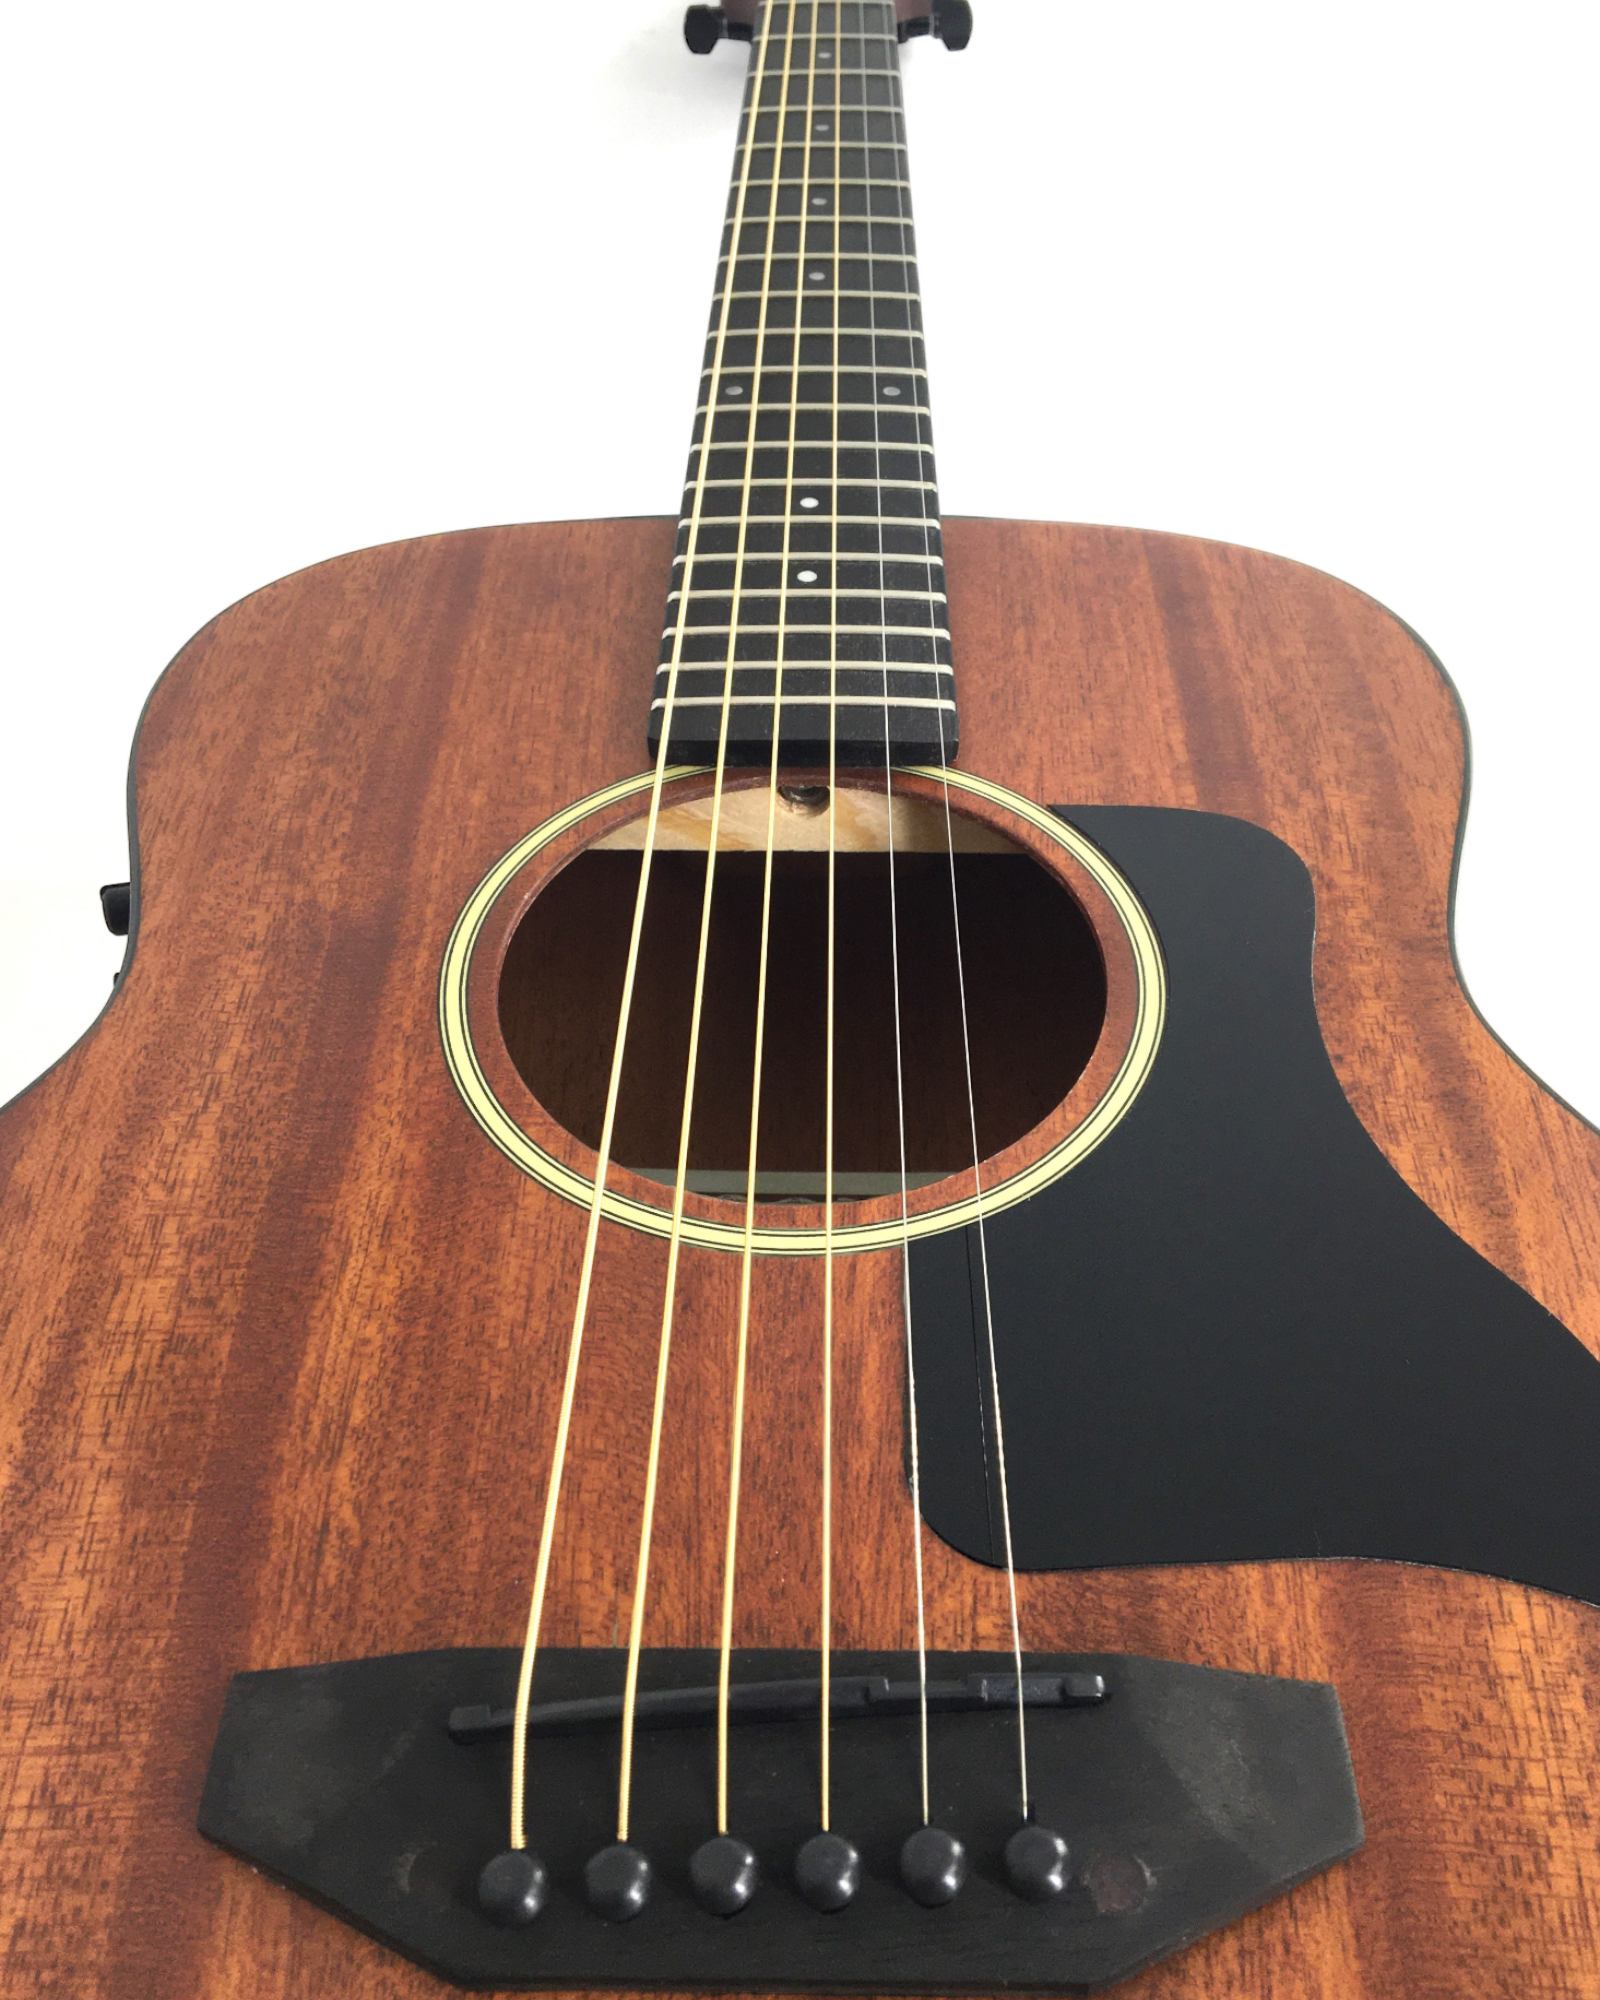 Caraya Solid Mahogany Built-In Pickups/Tuner Acoustic Guitar - Natural P304111SEQ